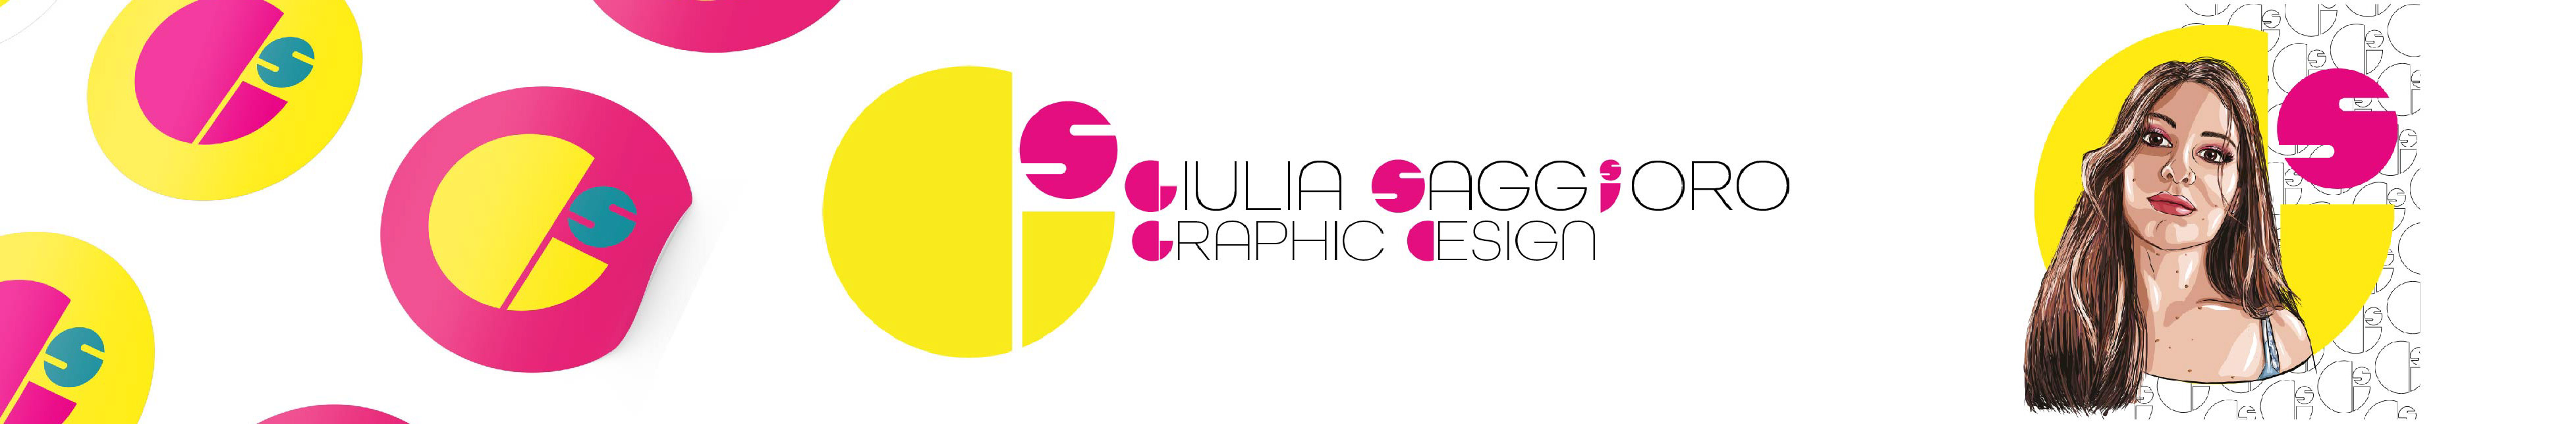 Giulia Saggioro's profile banner